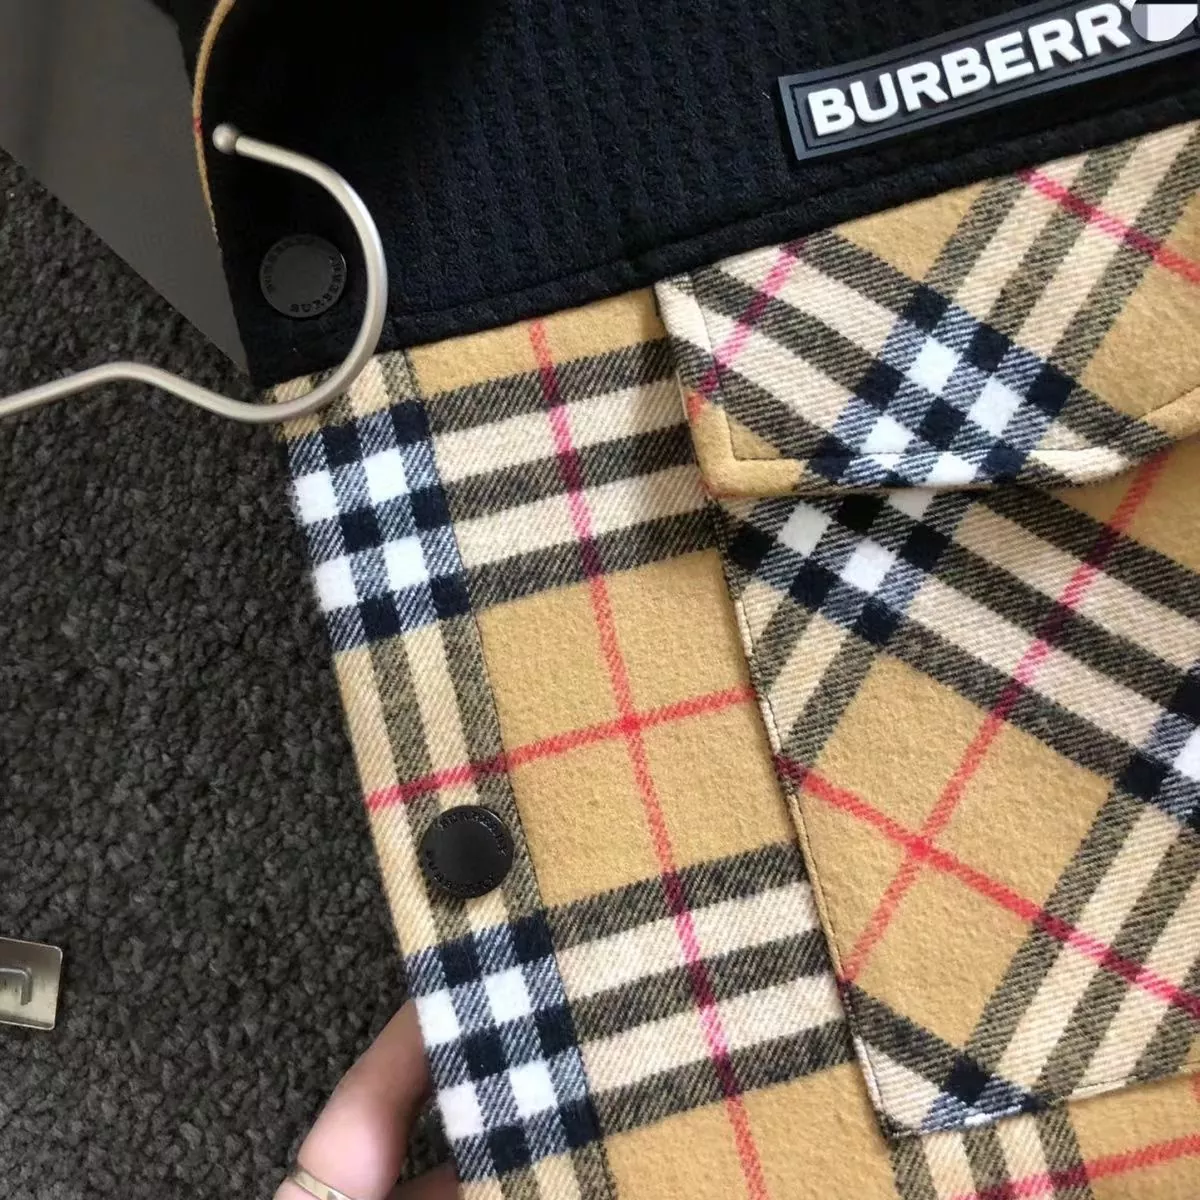 Burberry Men's Jacket